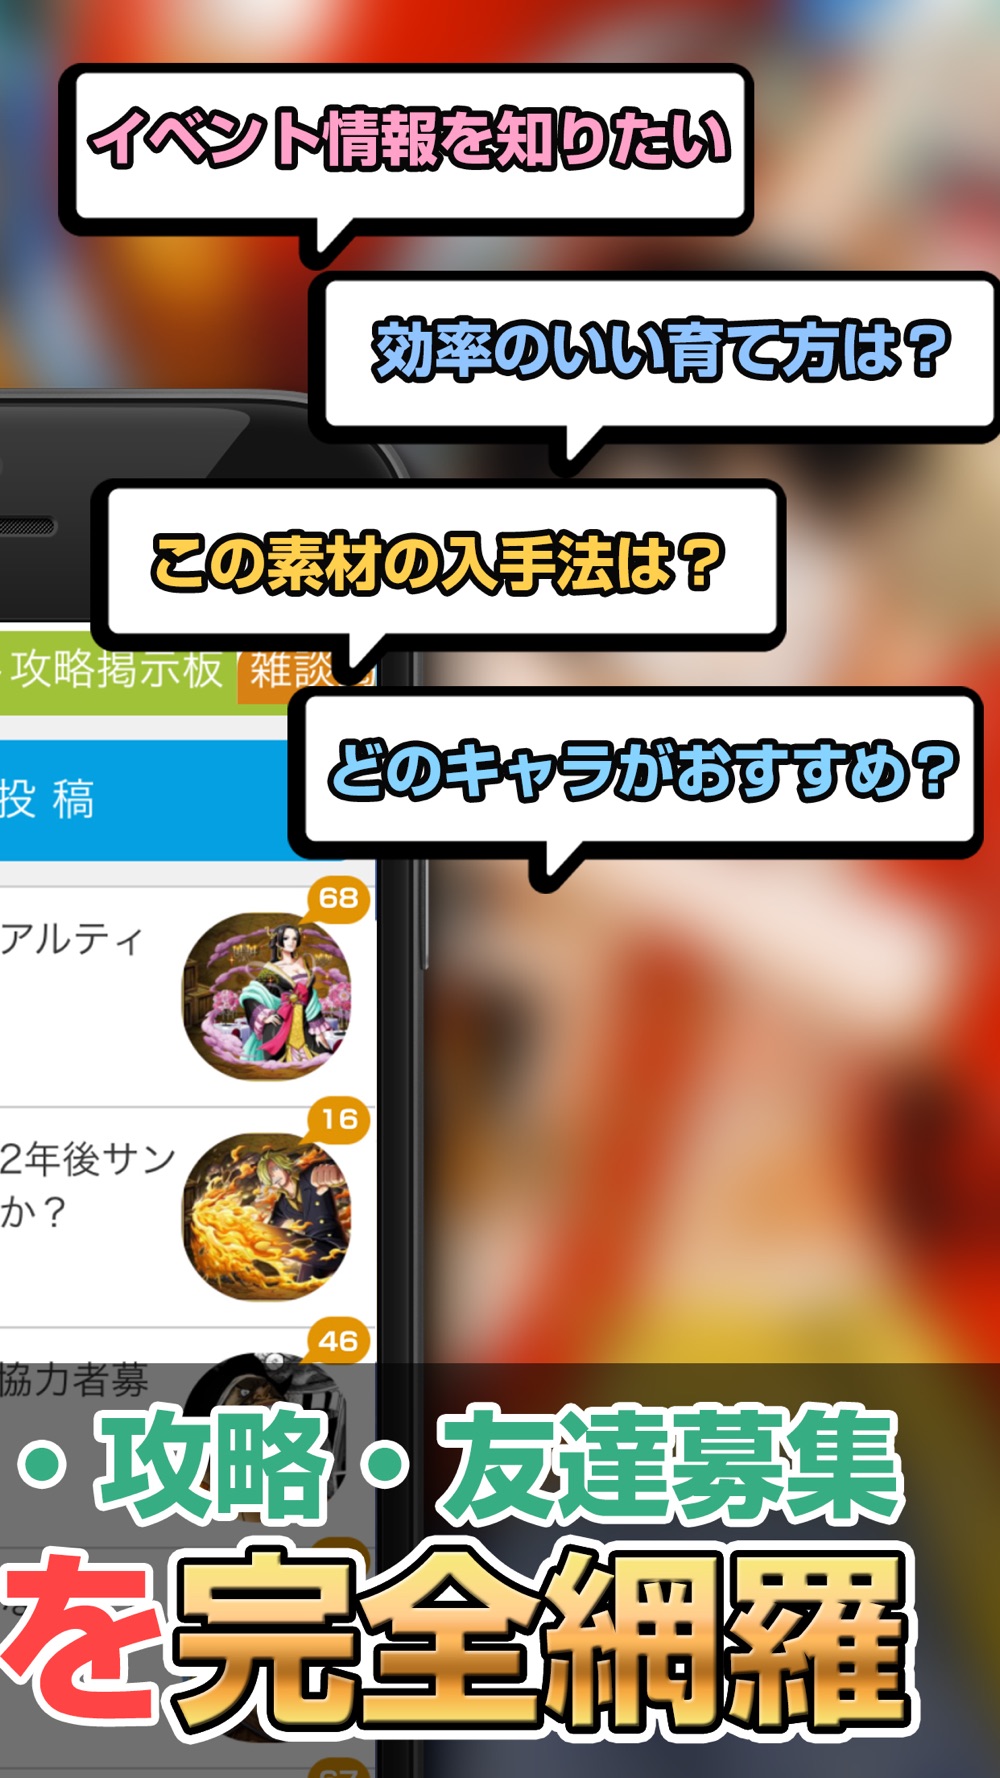 攻略情報マルチ募集 For トレクル One Piece トレジャークルーズ Free Download App For Iphone Steprimo Com